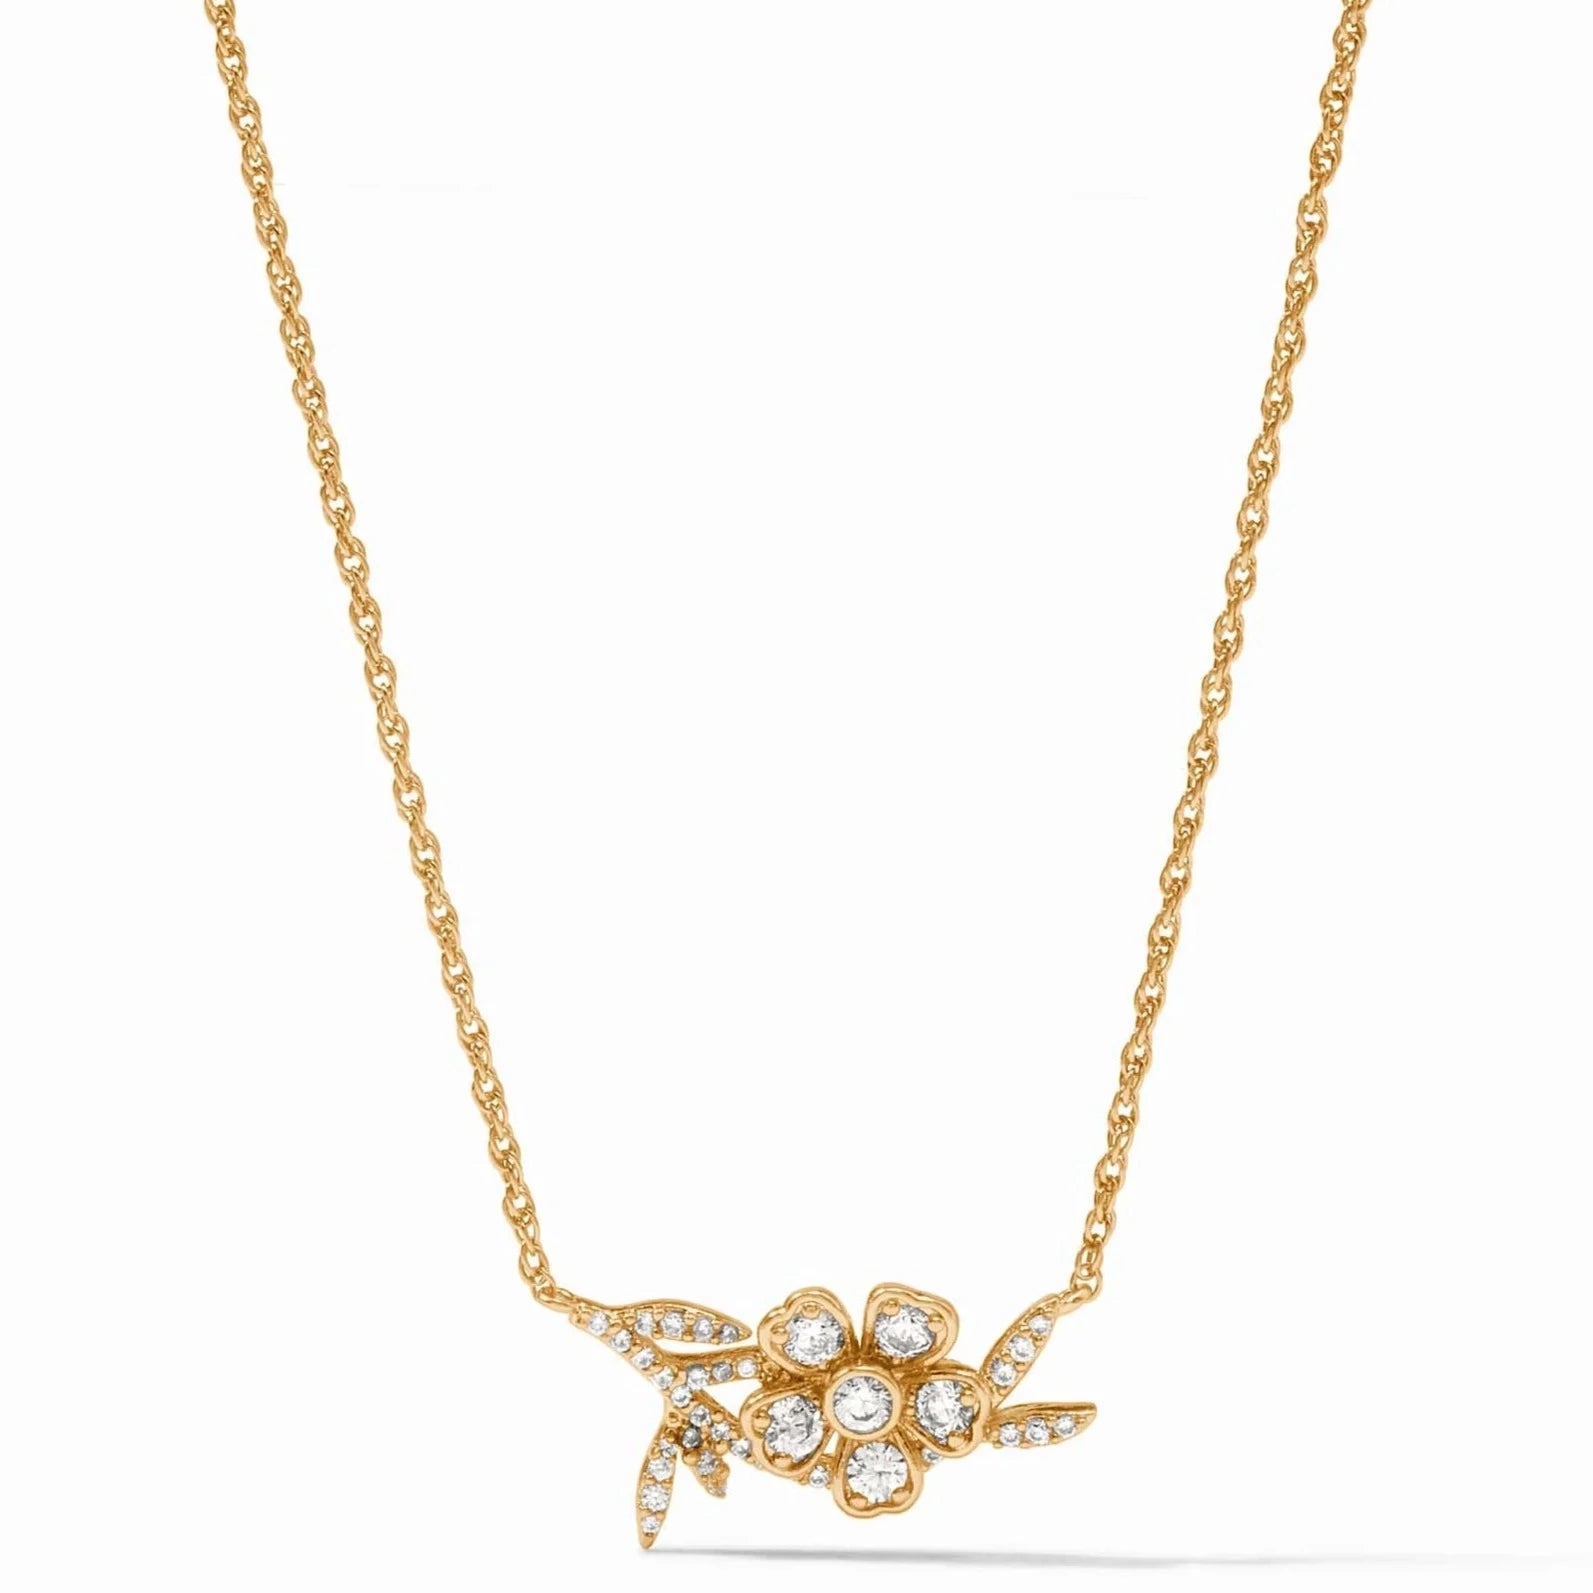 Julie Vos 24K Gold Plated Laurel Delicate Necklace